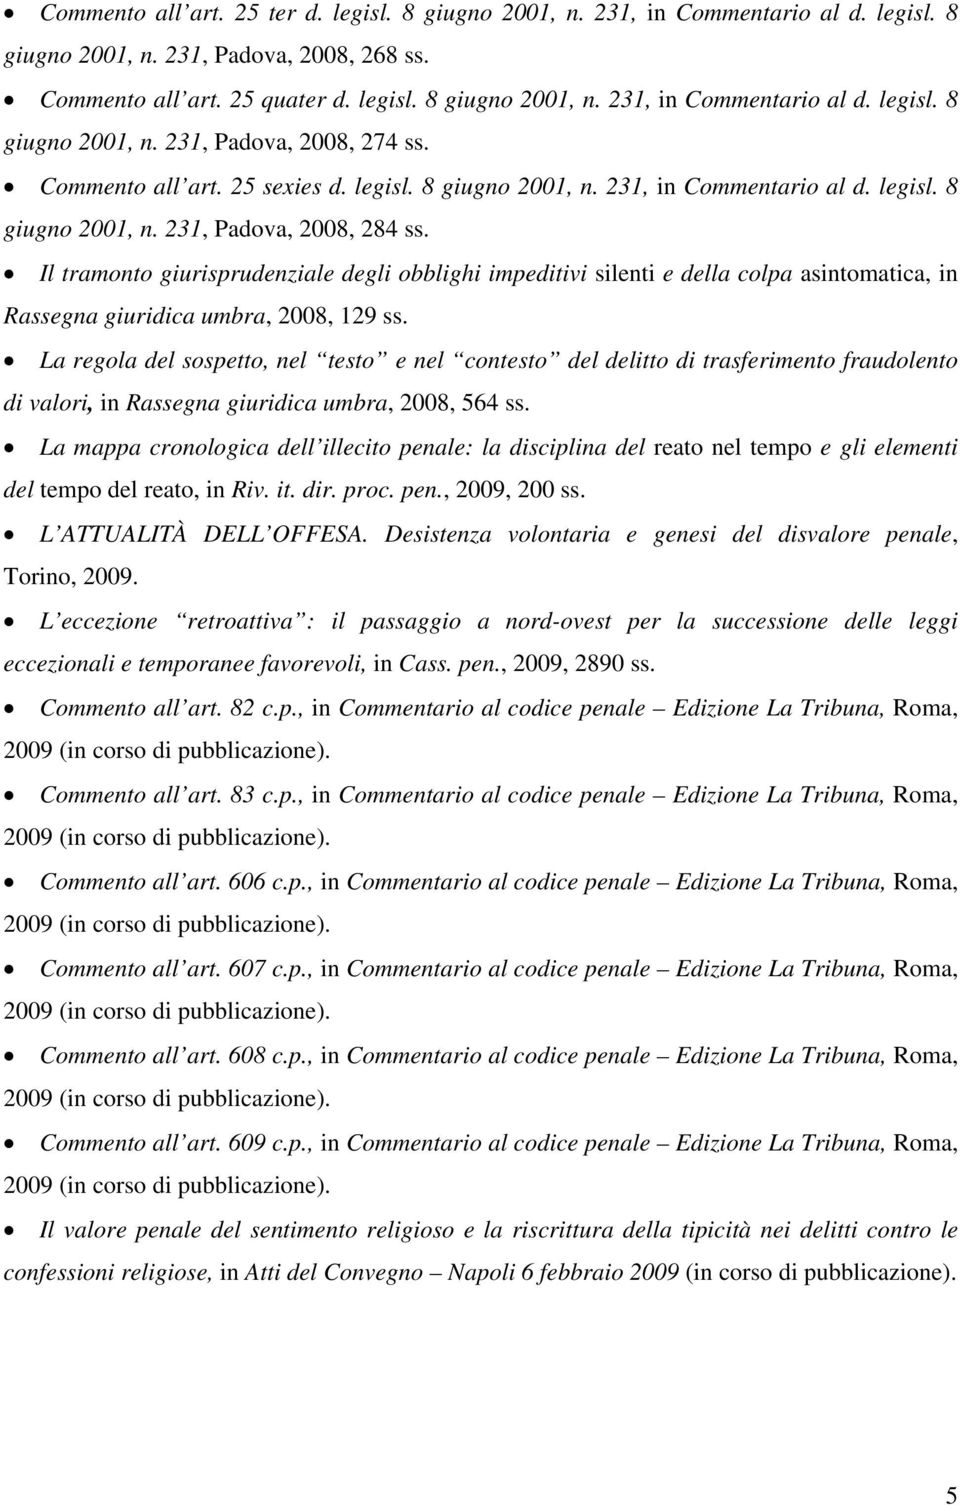 Il tramonto giurisprudenziale degli obblighi impeditivi silenti e della colpa asintomatica, in Rassegna giuridica umbra, 2008, 129 ss.